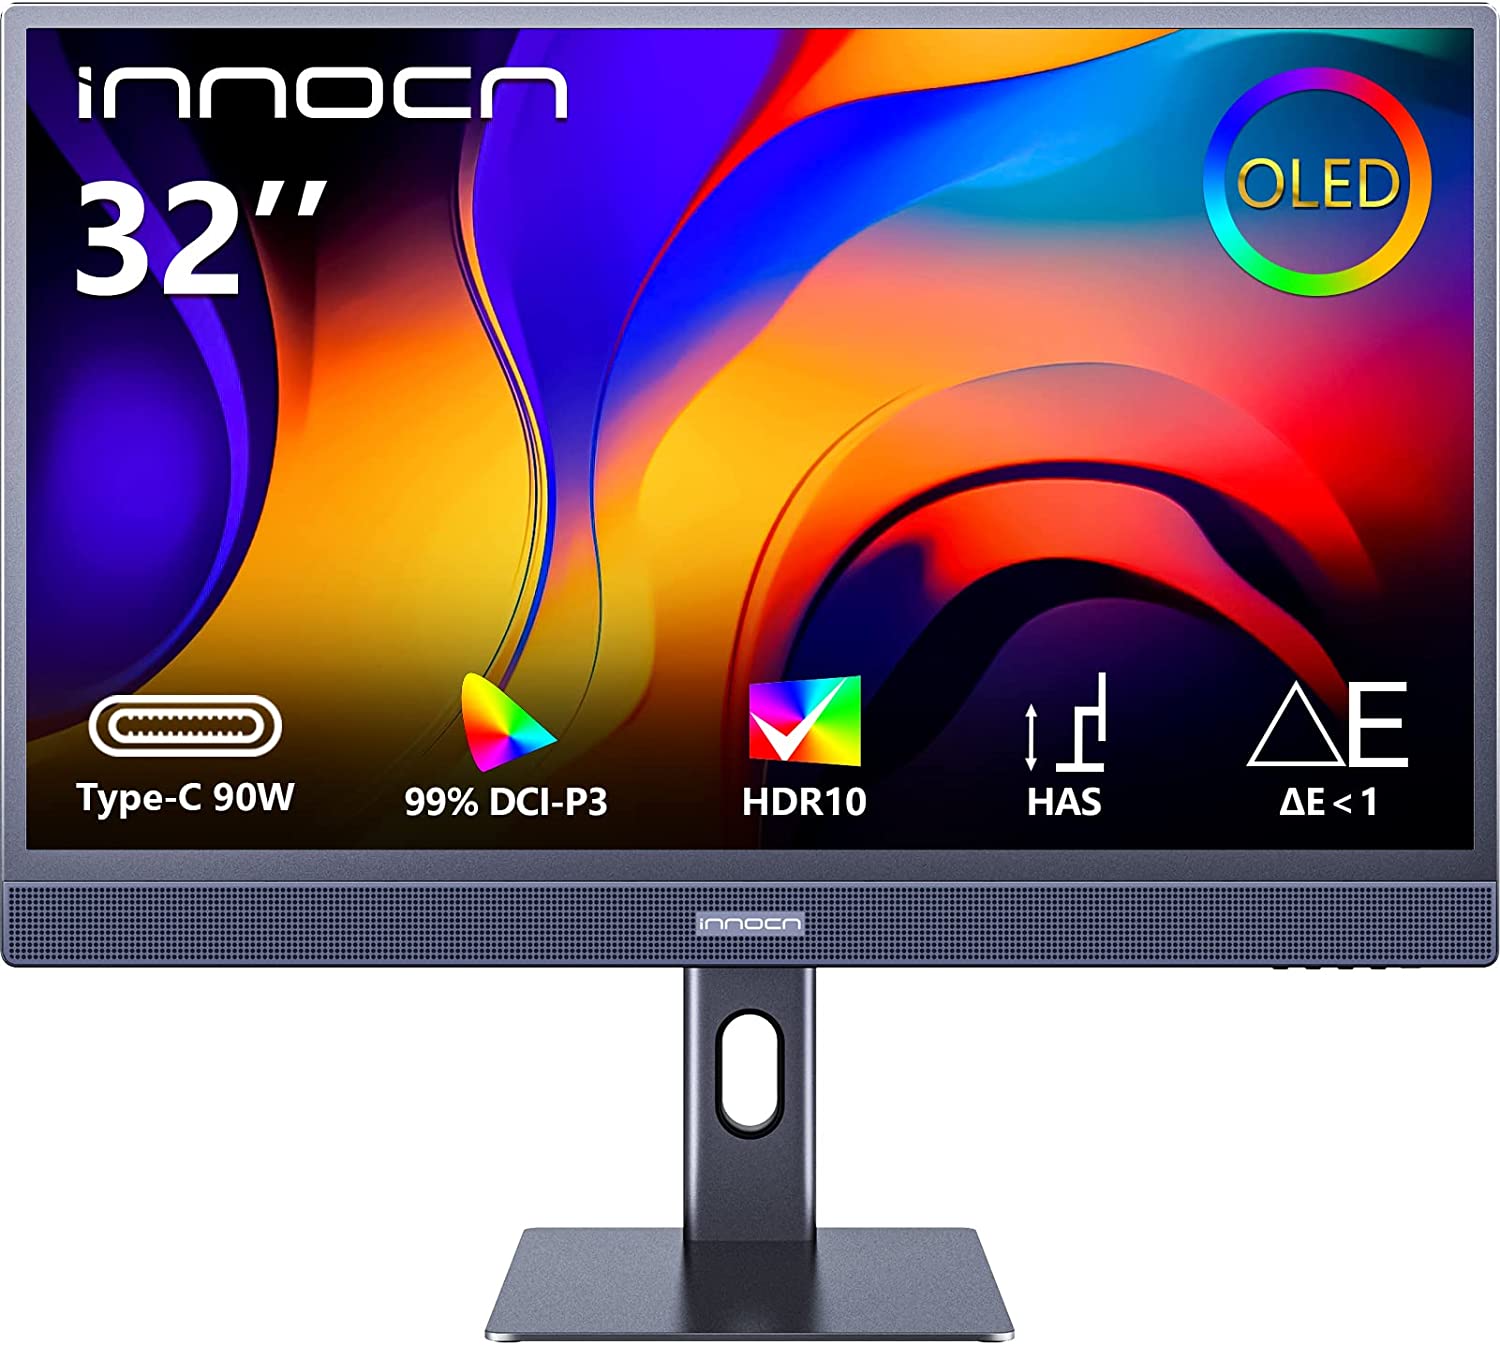 4K 32” OLED monitor